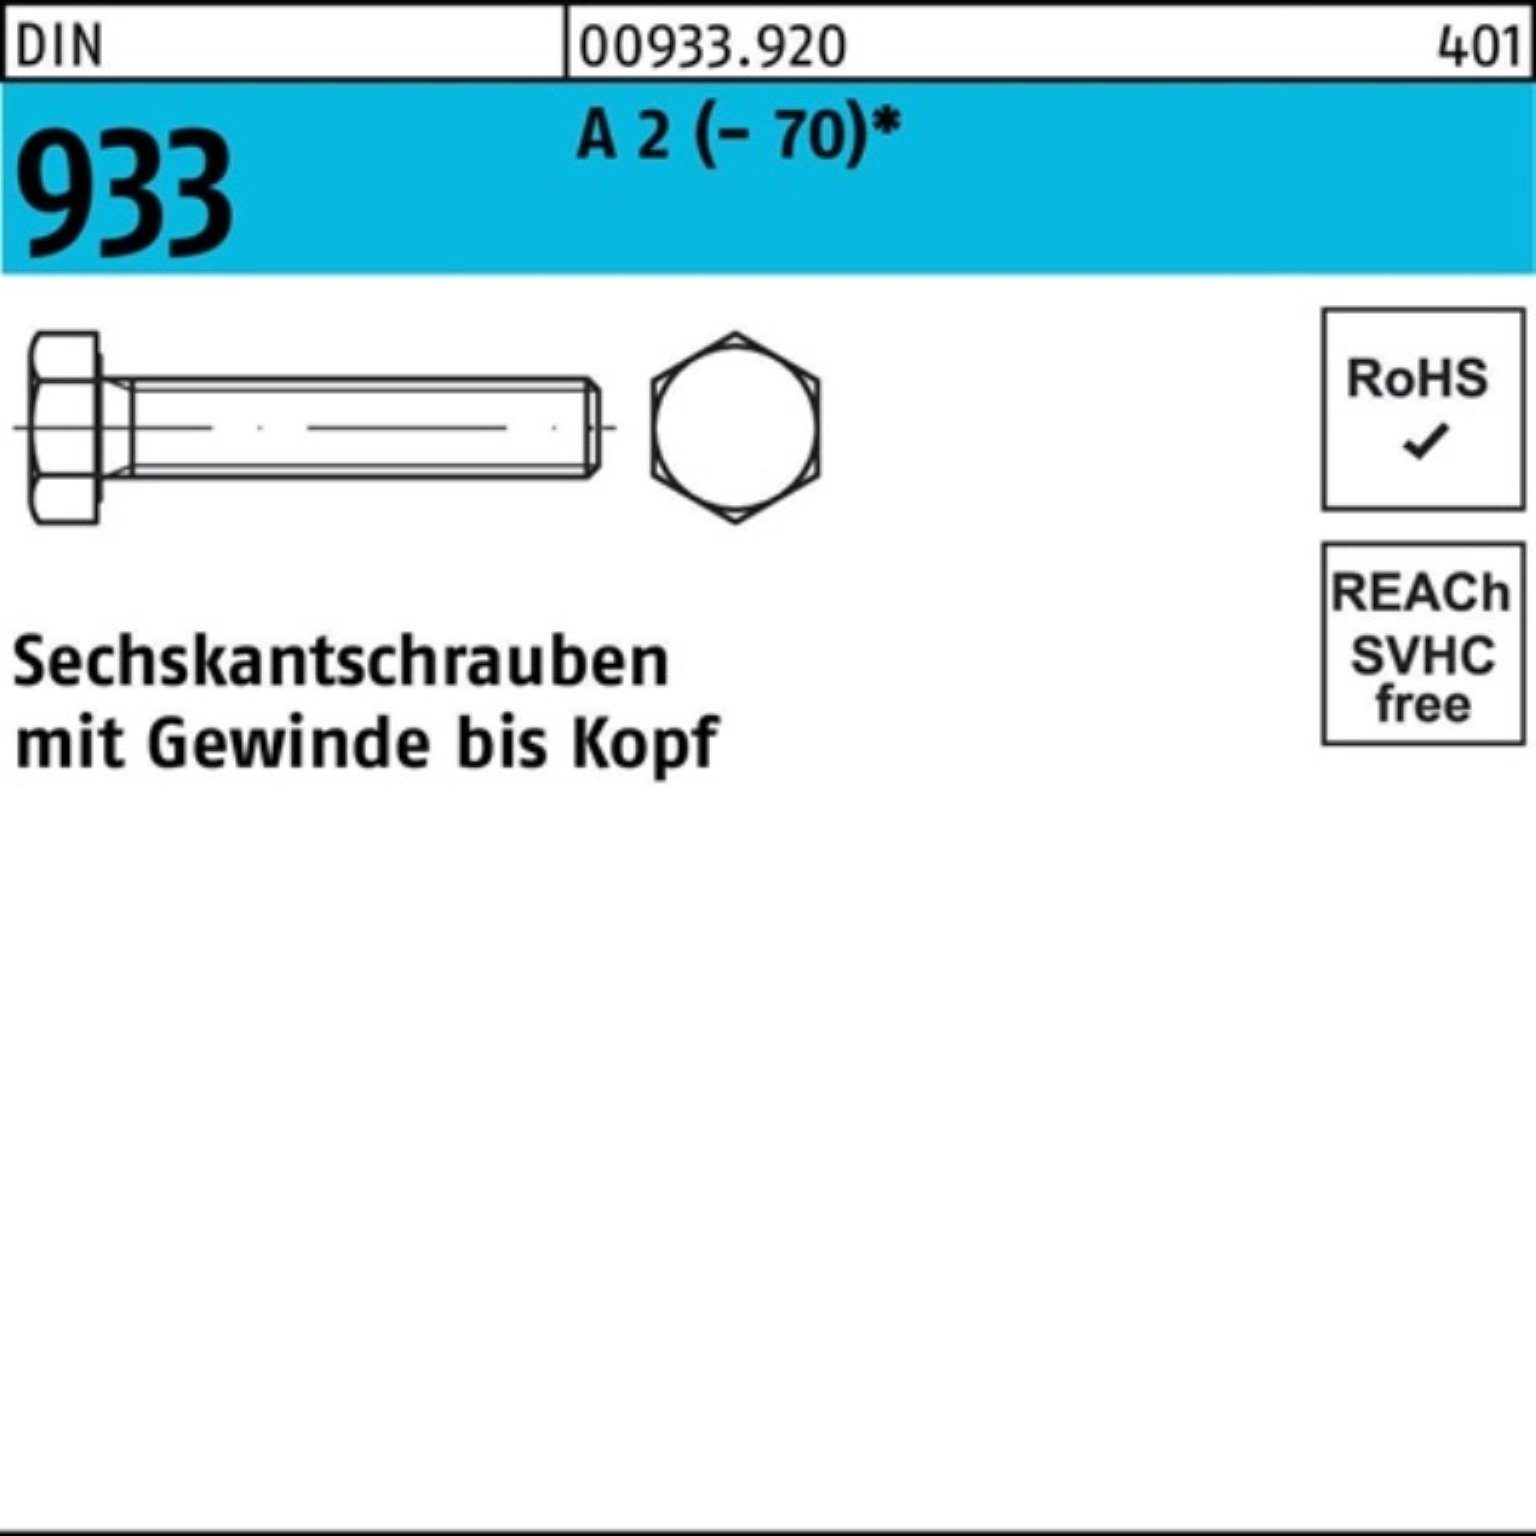 100er DIN M8x Sechskantschraube Reyher Stück 50 Sechskantschraube 100 Pack D 2 (70) VG A 933